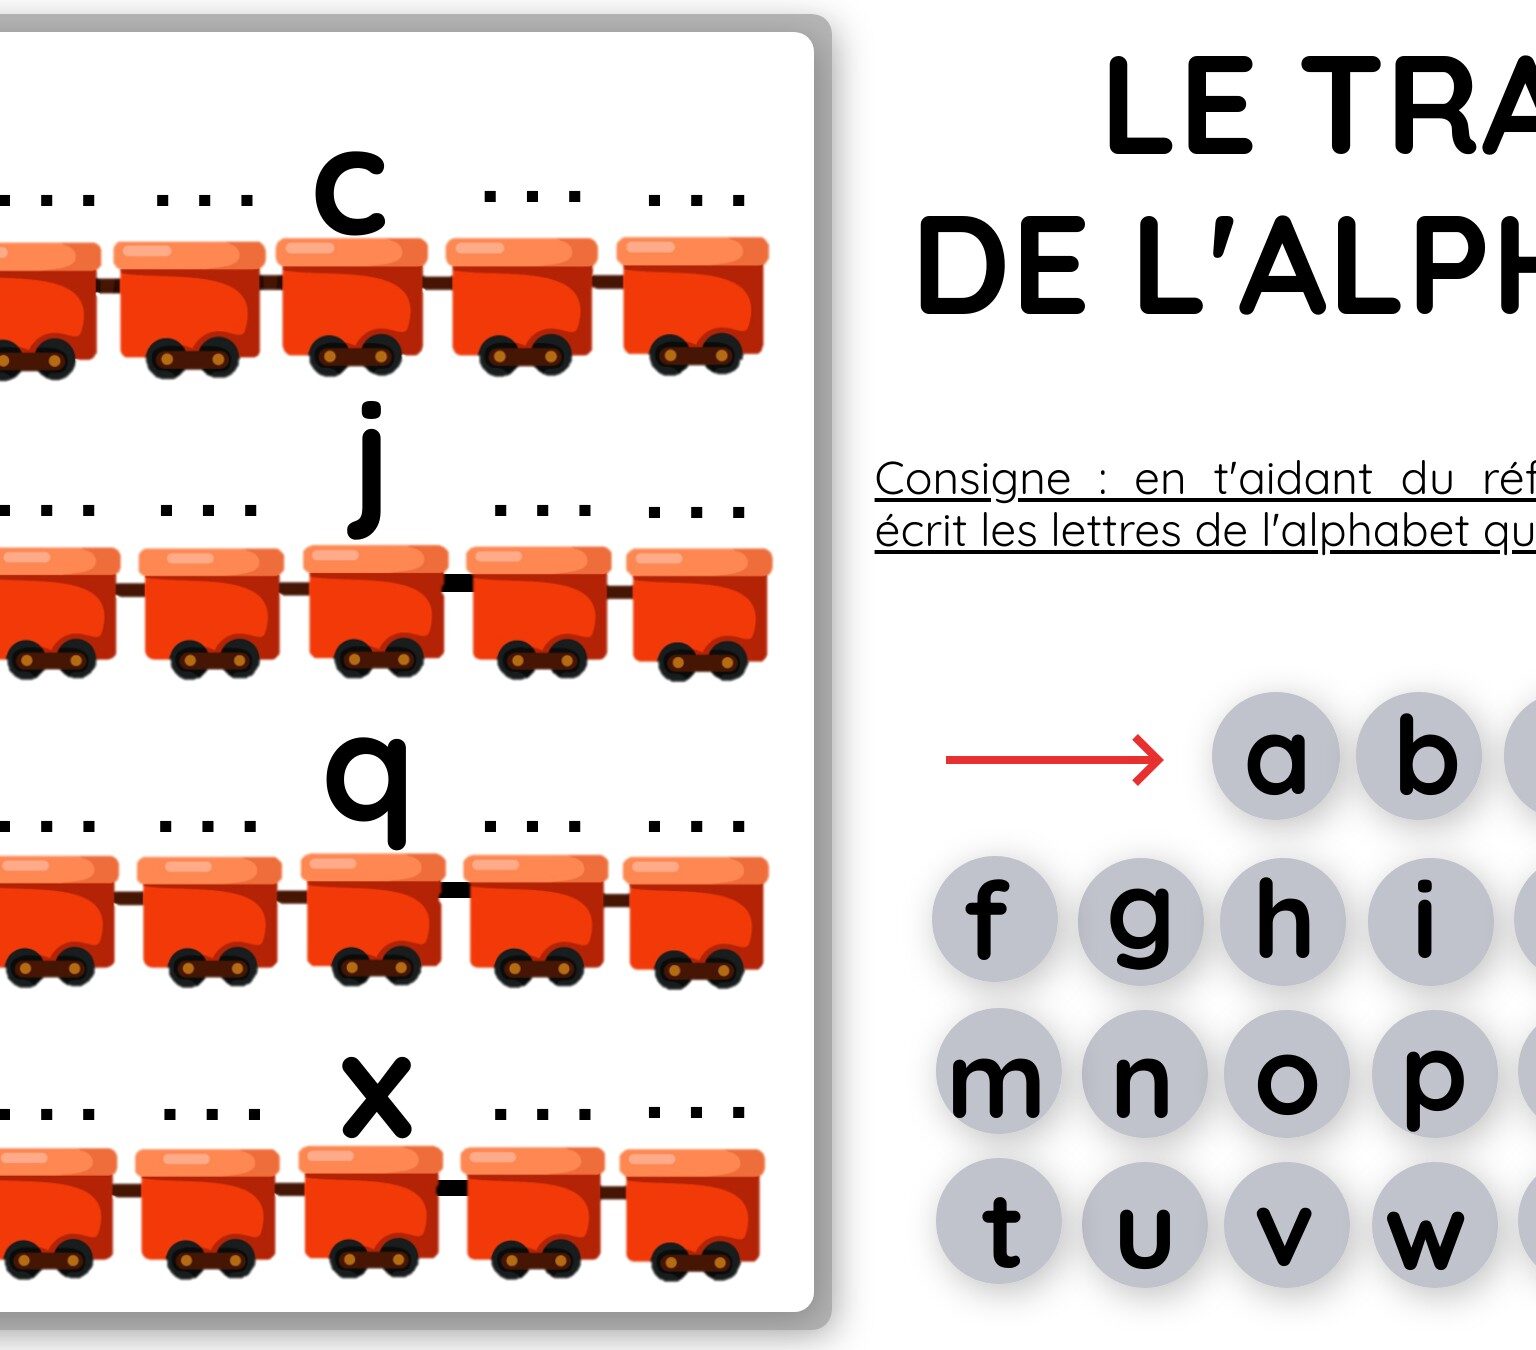 Le train de l'alphabet - script